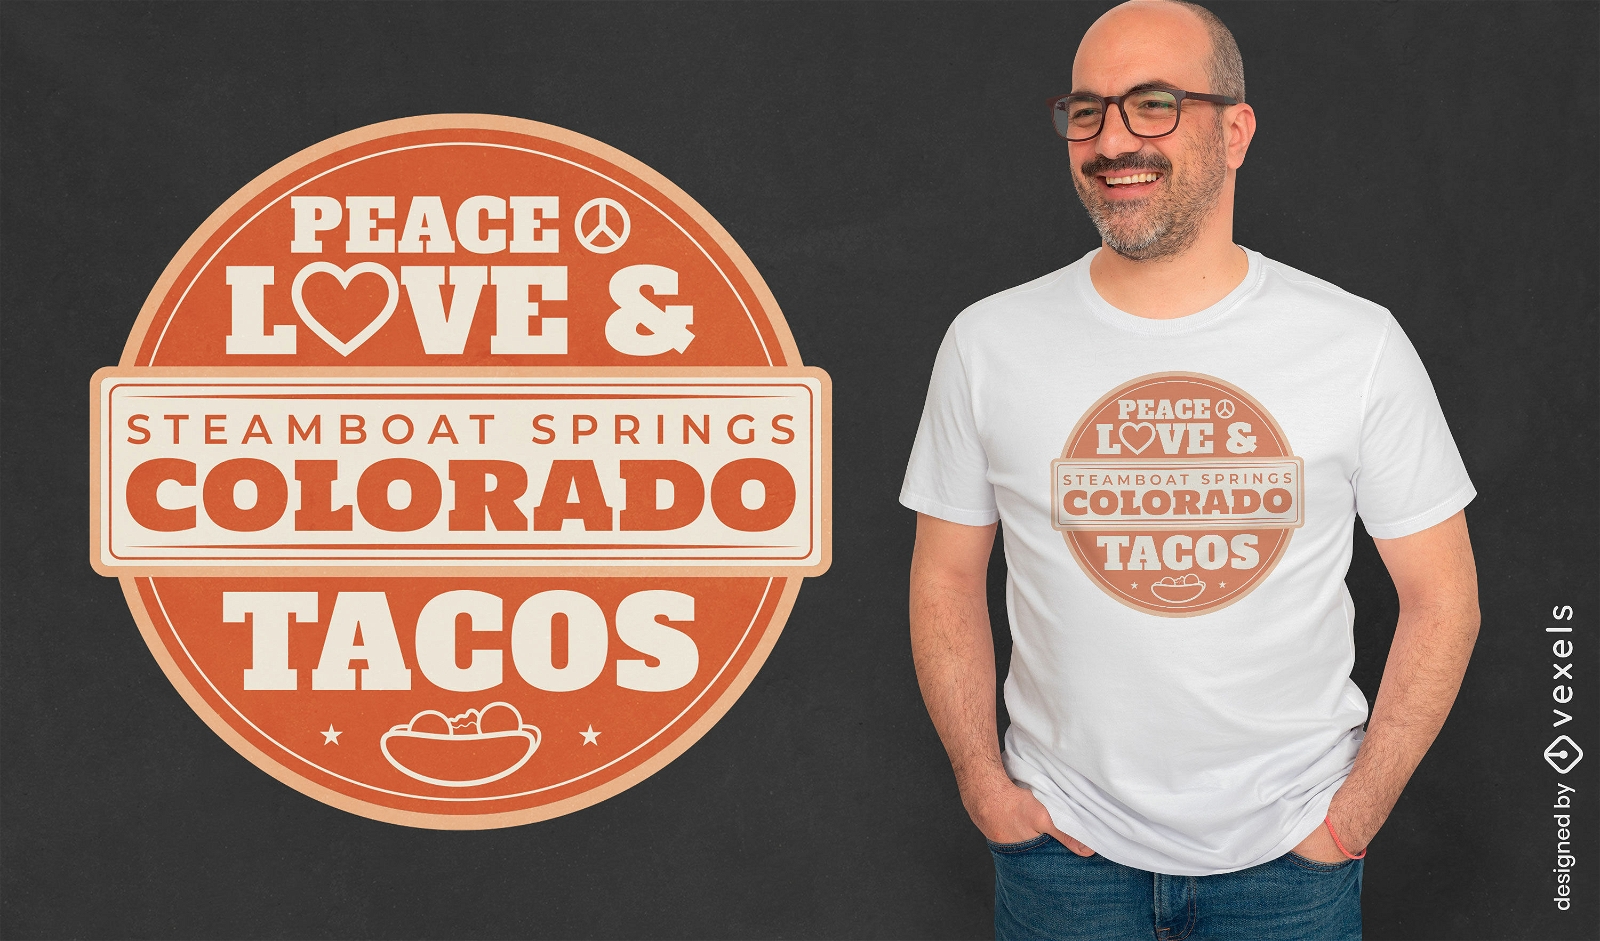 Diseño de camiseta de insignia de tacos y amor de paz